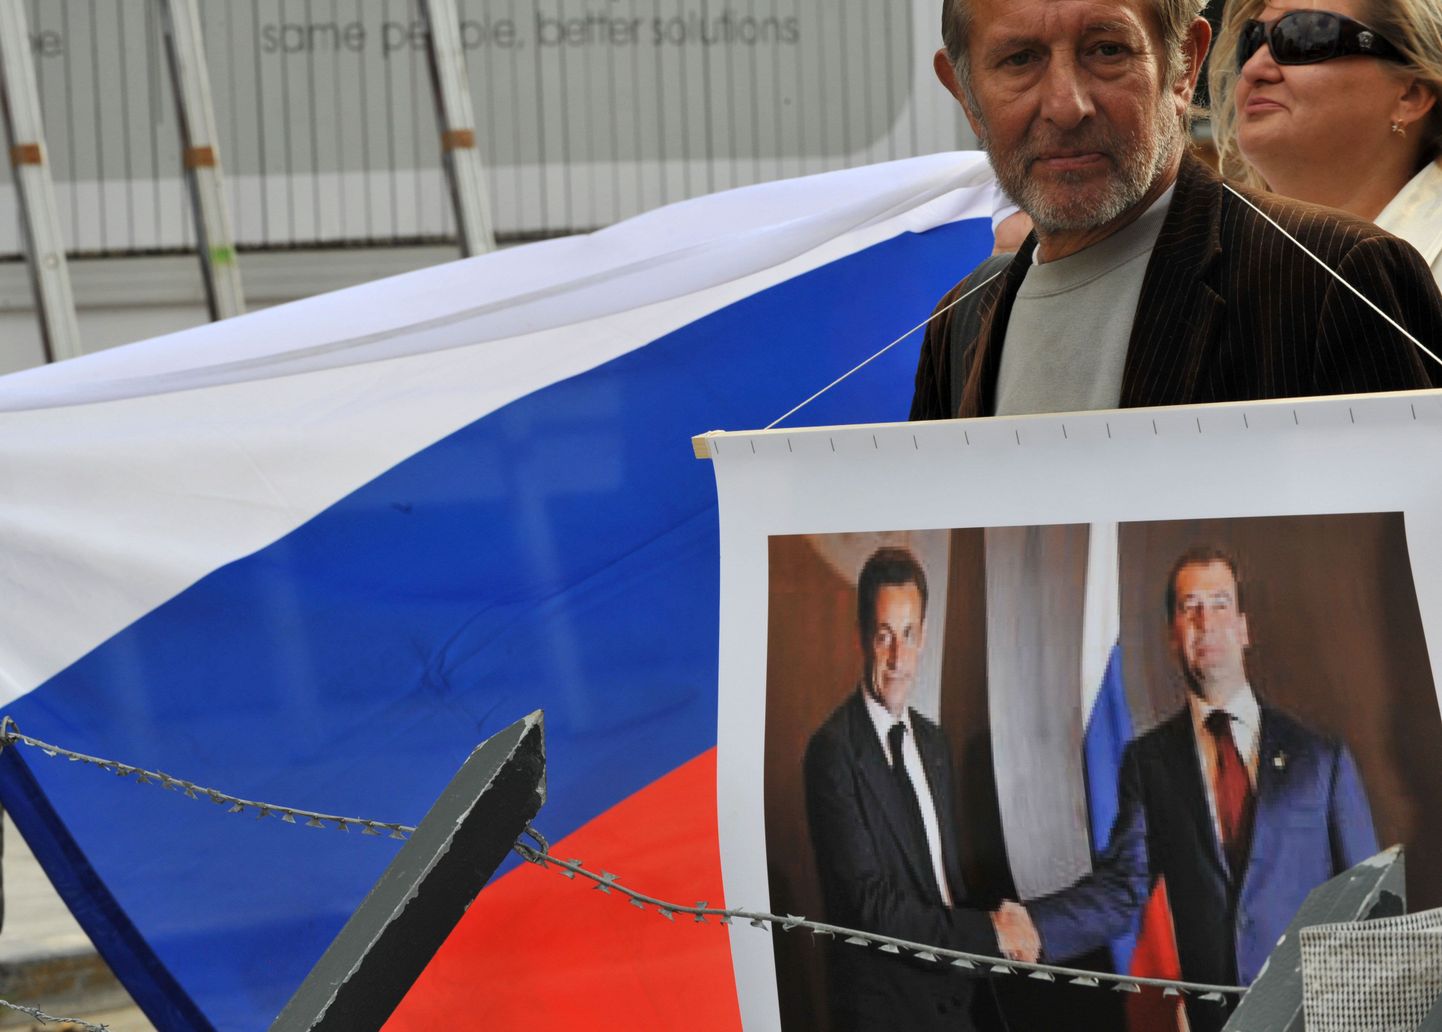 Русский участник акции протеста в Брюсселе с фотографией президента Франции Николя Саркози и президента России Дмитрия Медведева после войны в Грузии. Как утверждают, за участие в подобных уличных мероприятиях некоторым демонстрантам платят деньги.